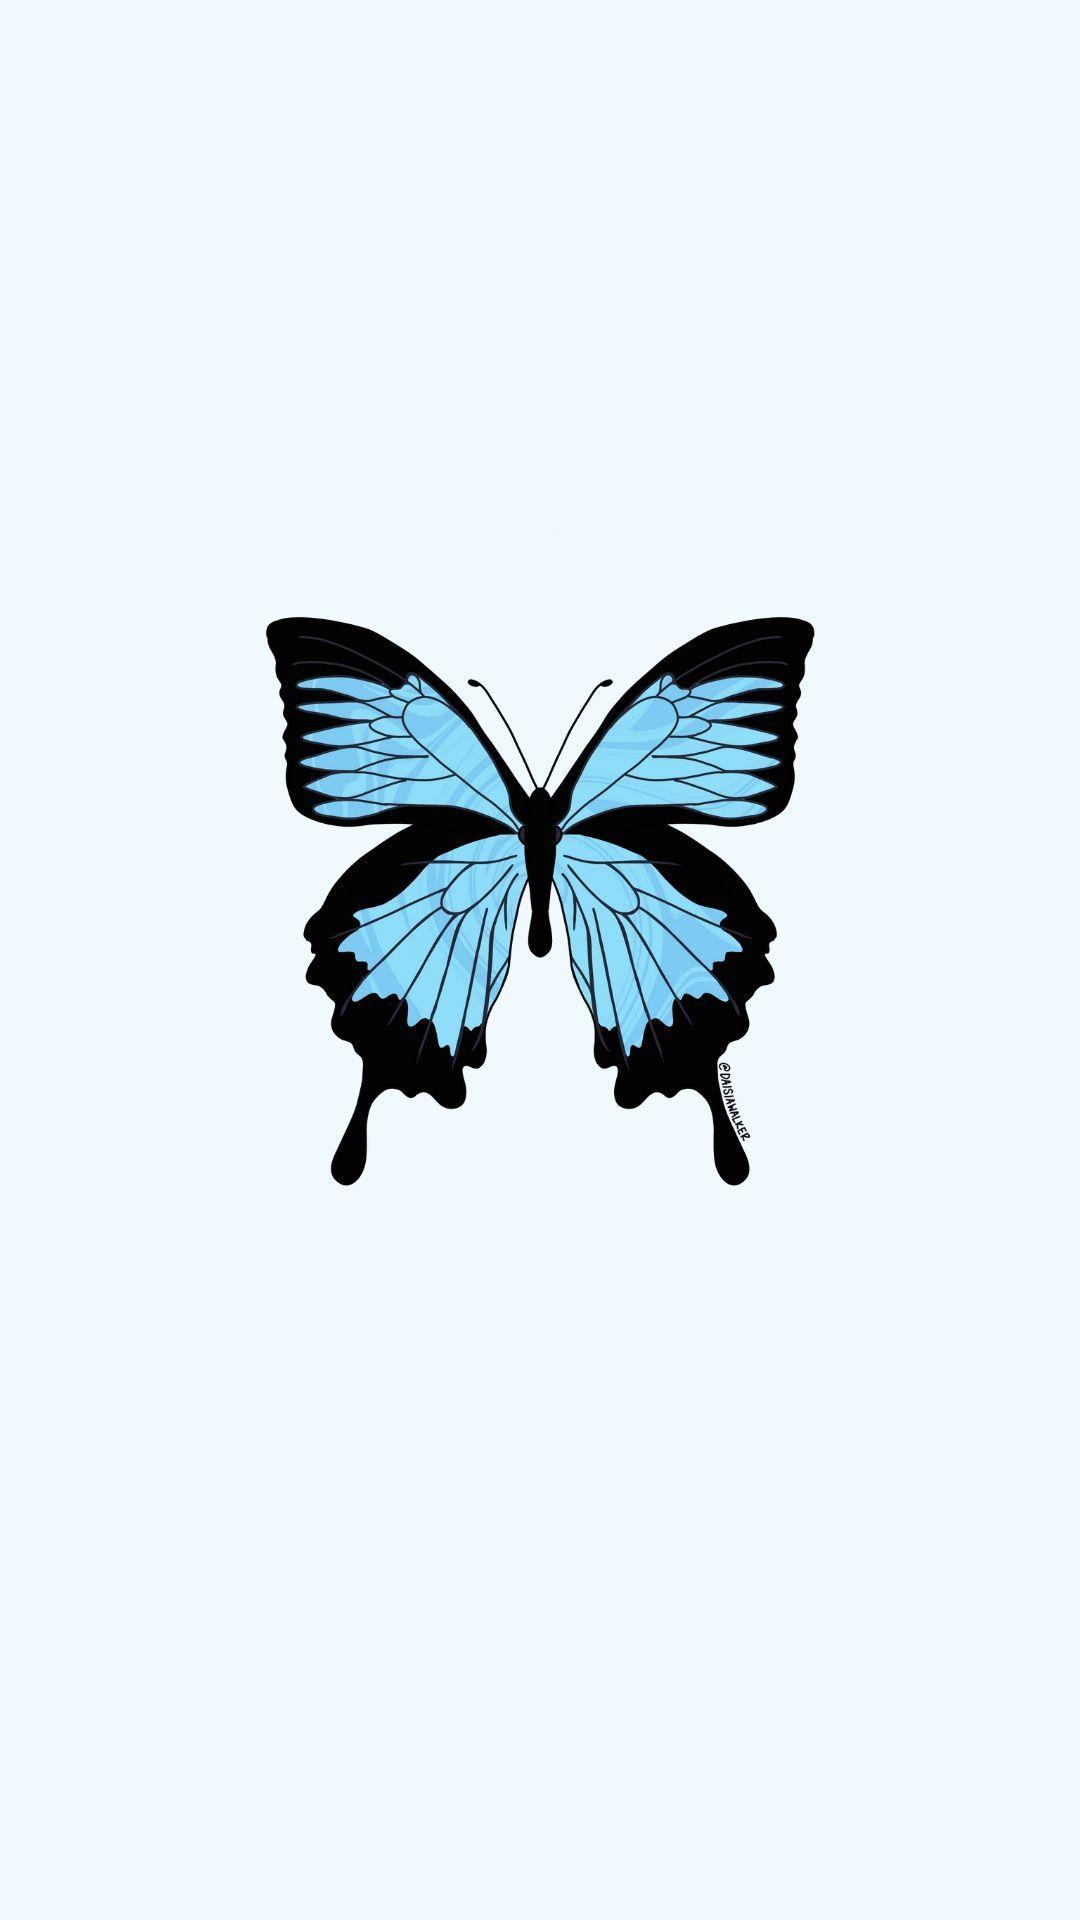 1080x1920 Bướm xanh nhỏ.  Hình nền con bướm xanh, Con bướm xanh, Hình nền con bướm